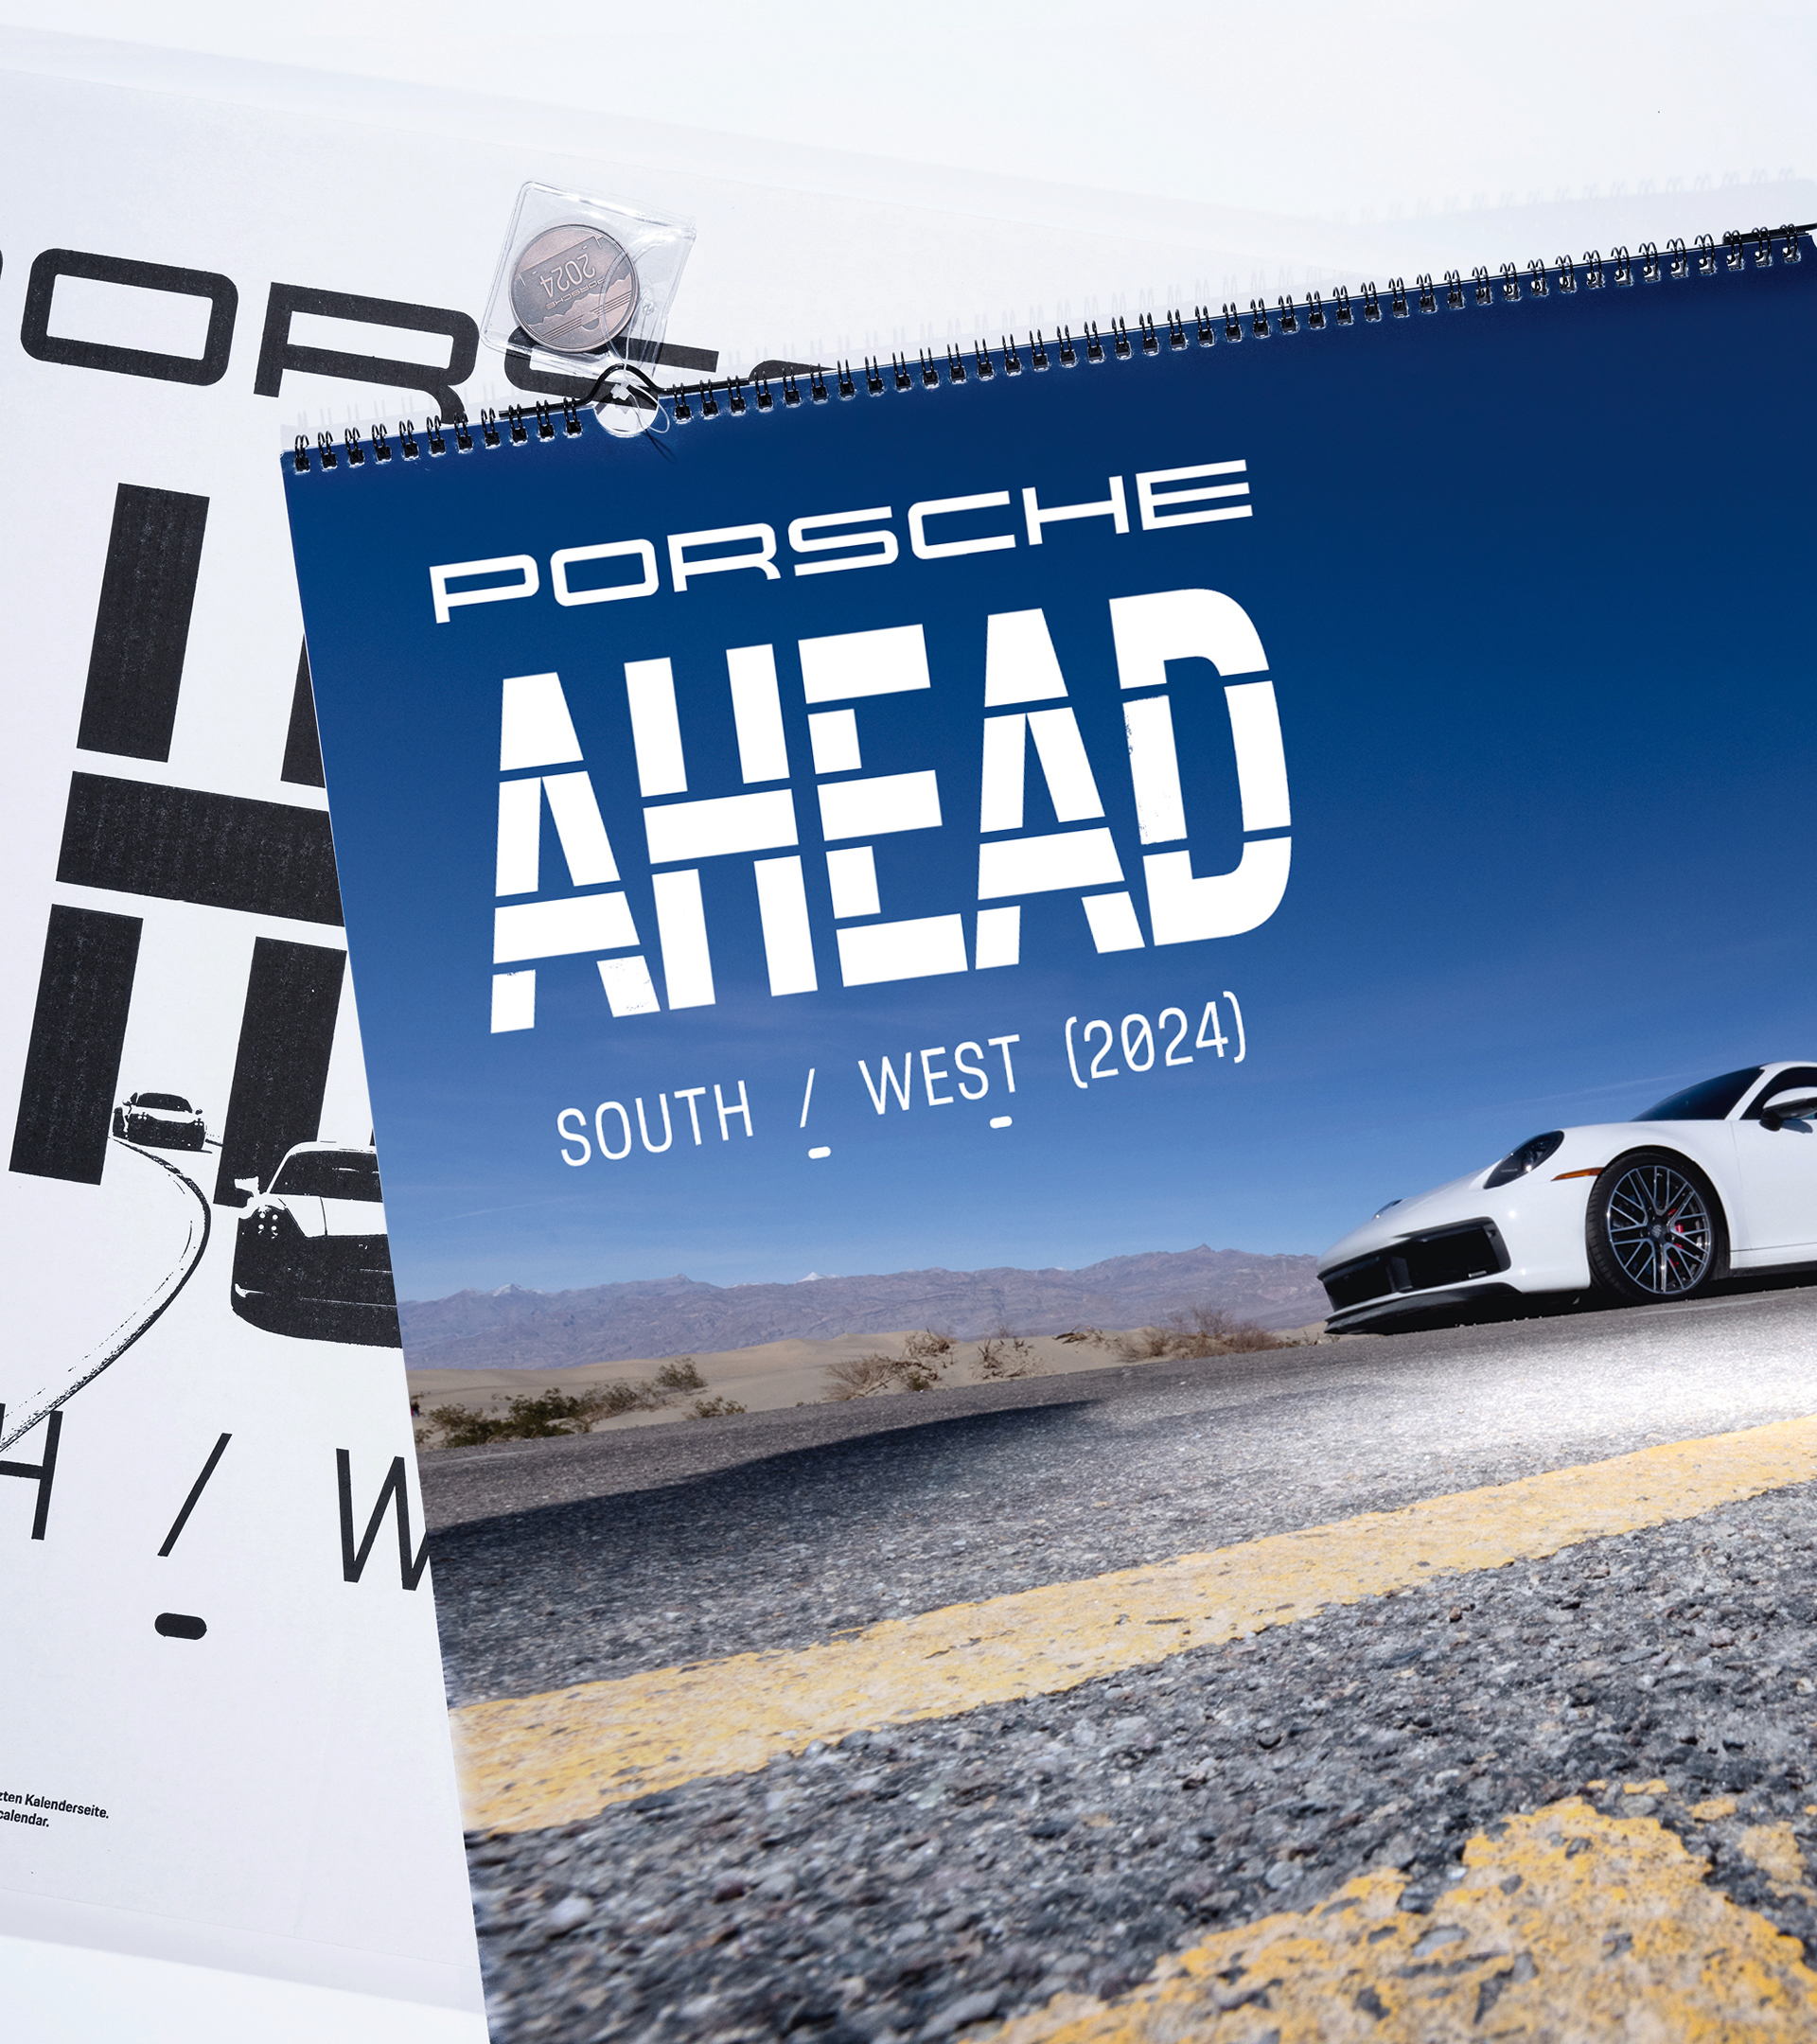 Porsche Poster Set – 75Y – Driven by Dreams